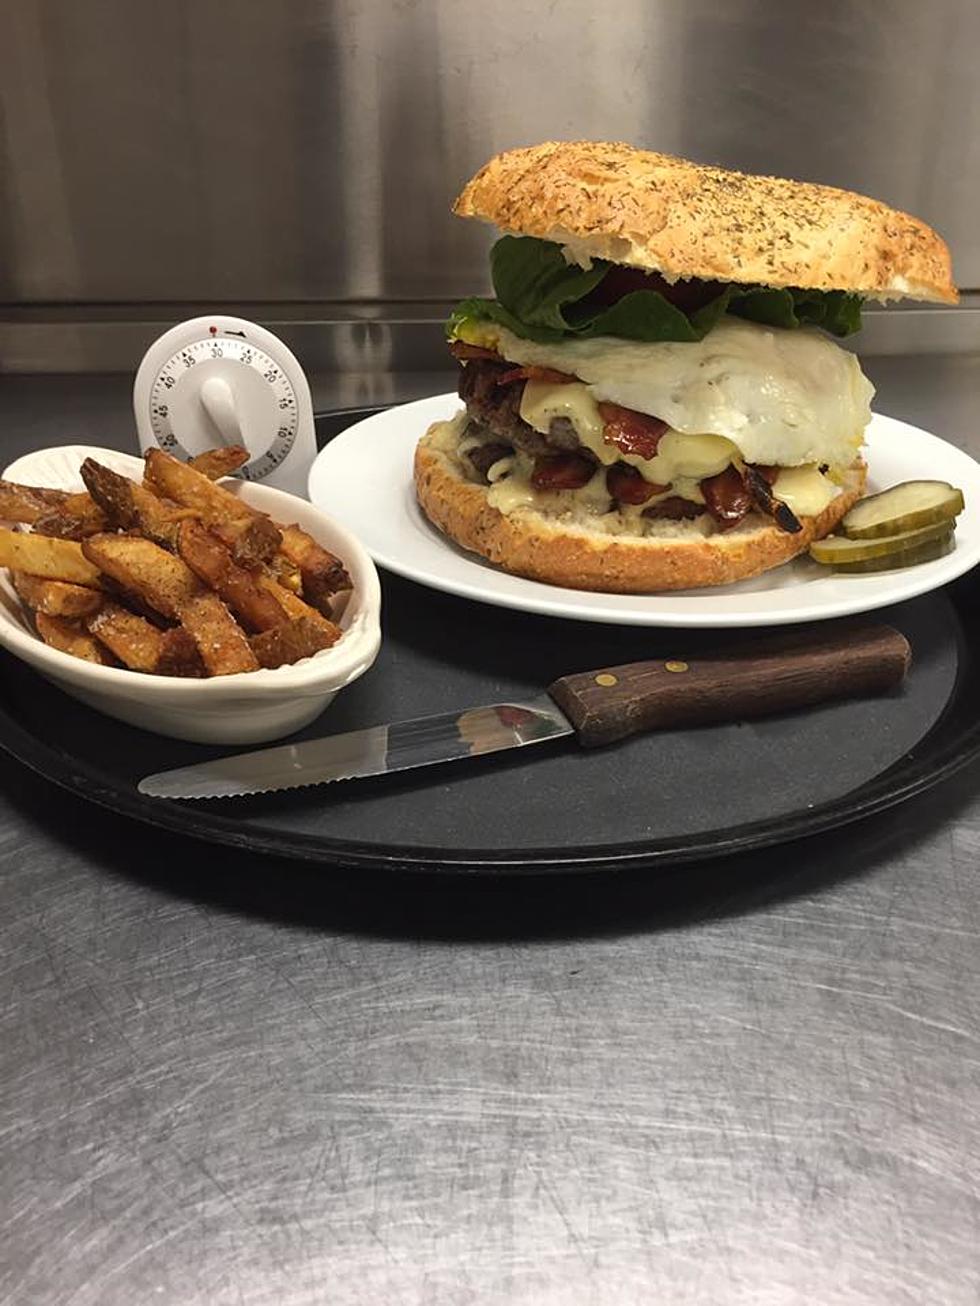 Can You Take On the Jamo’s Burger Challenge?